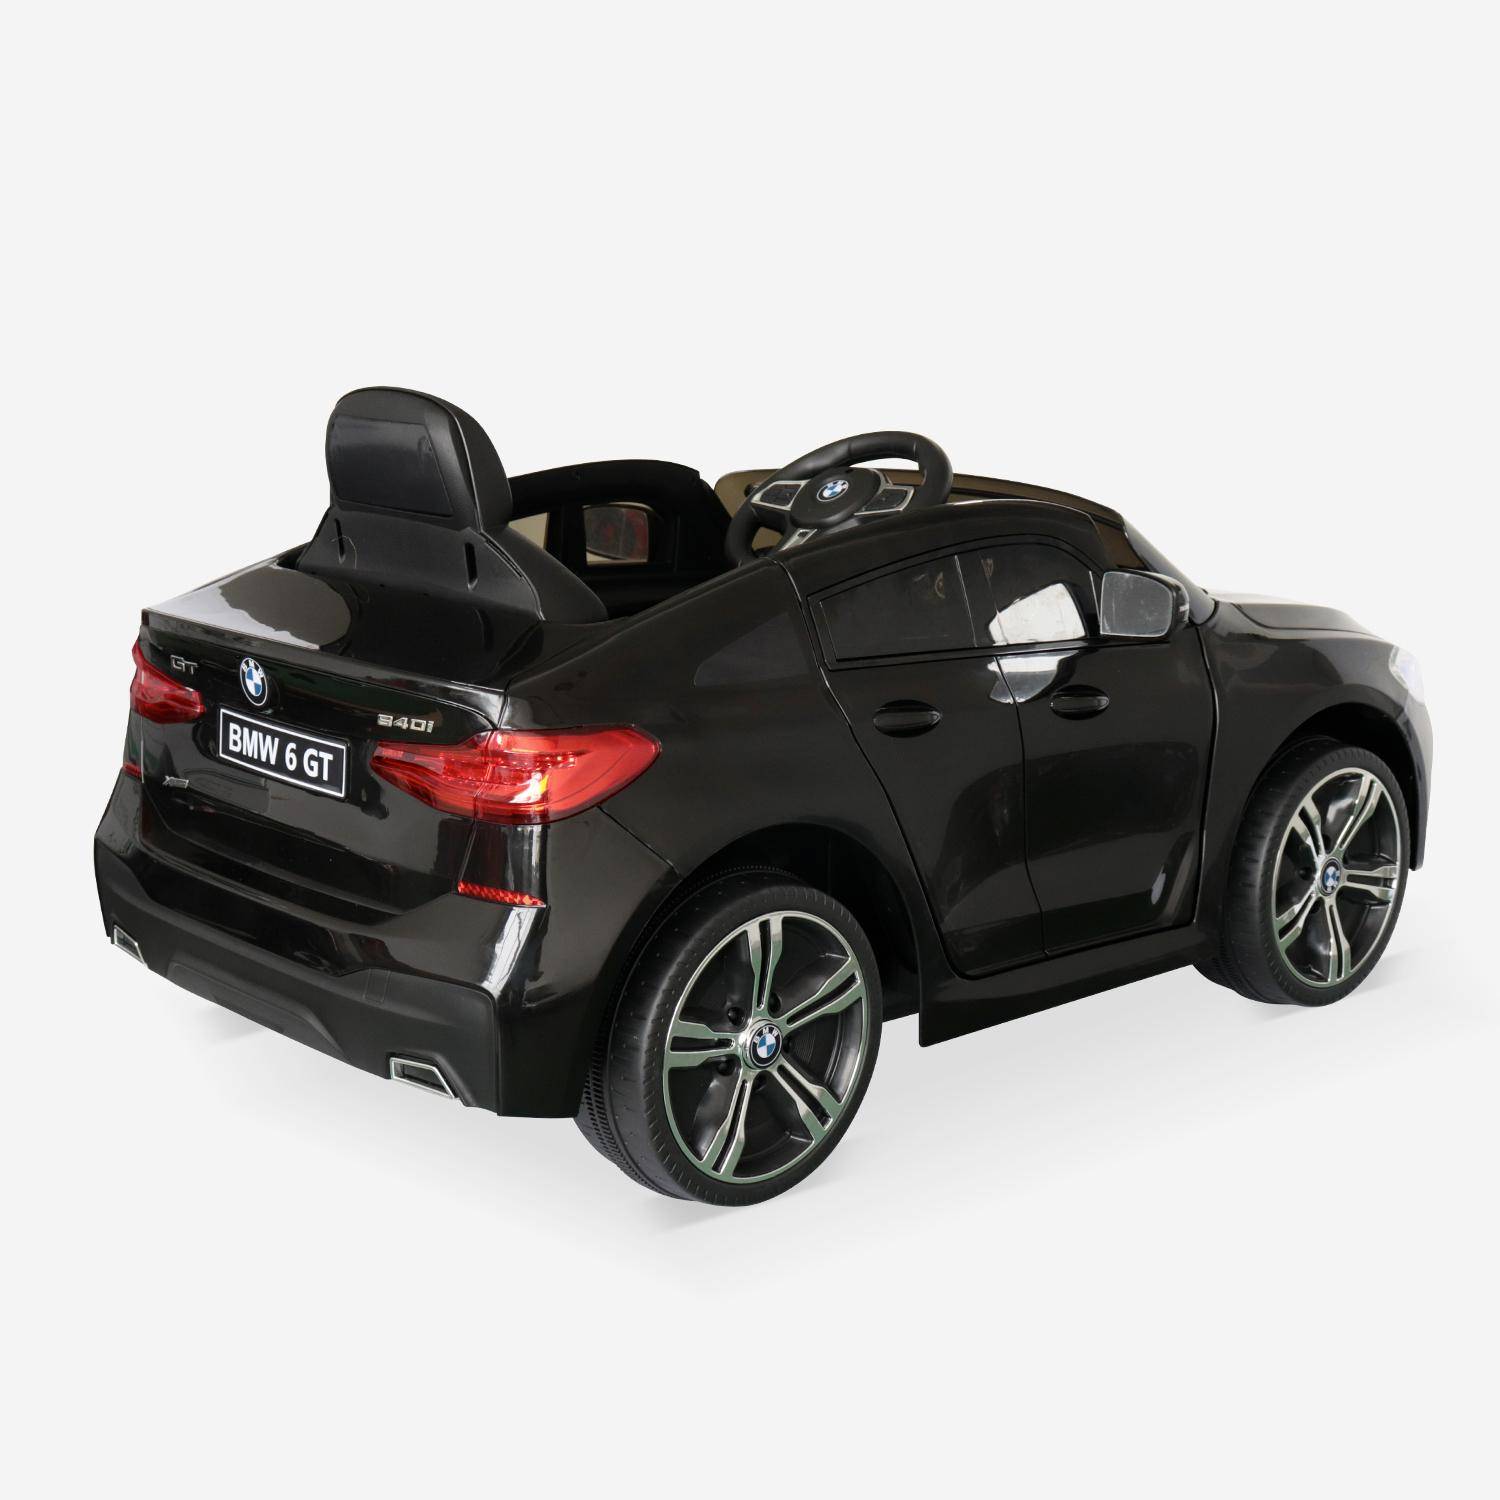 BMW GT6 Gran Turismo negro, coche eléctrico 12V, 1 plaza, descapotable para niños con autorradio y mando a distancia,sweeek,Photo3